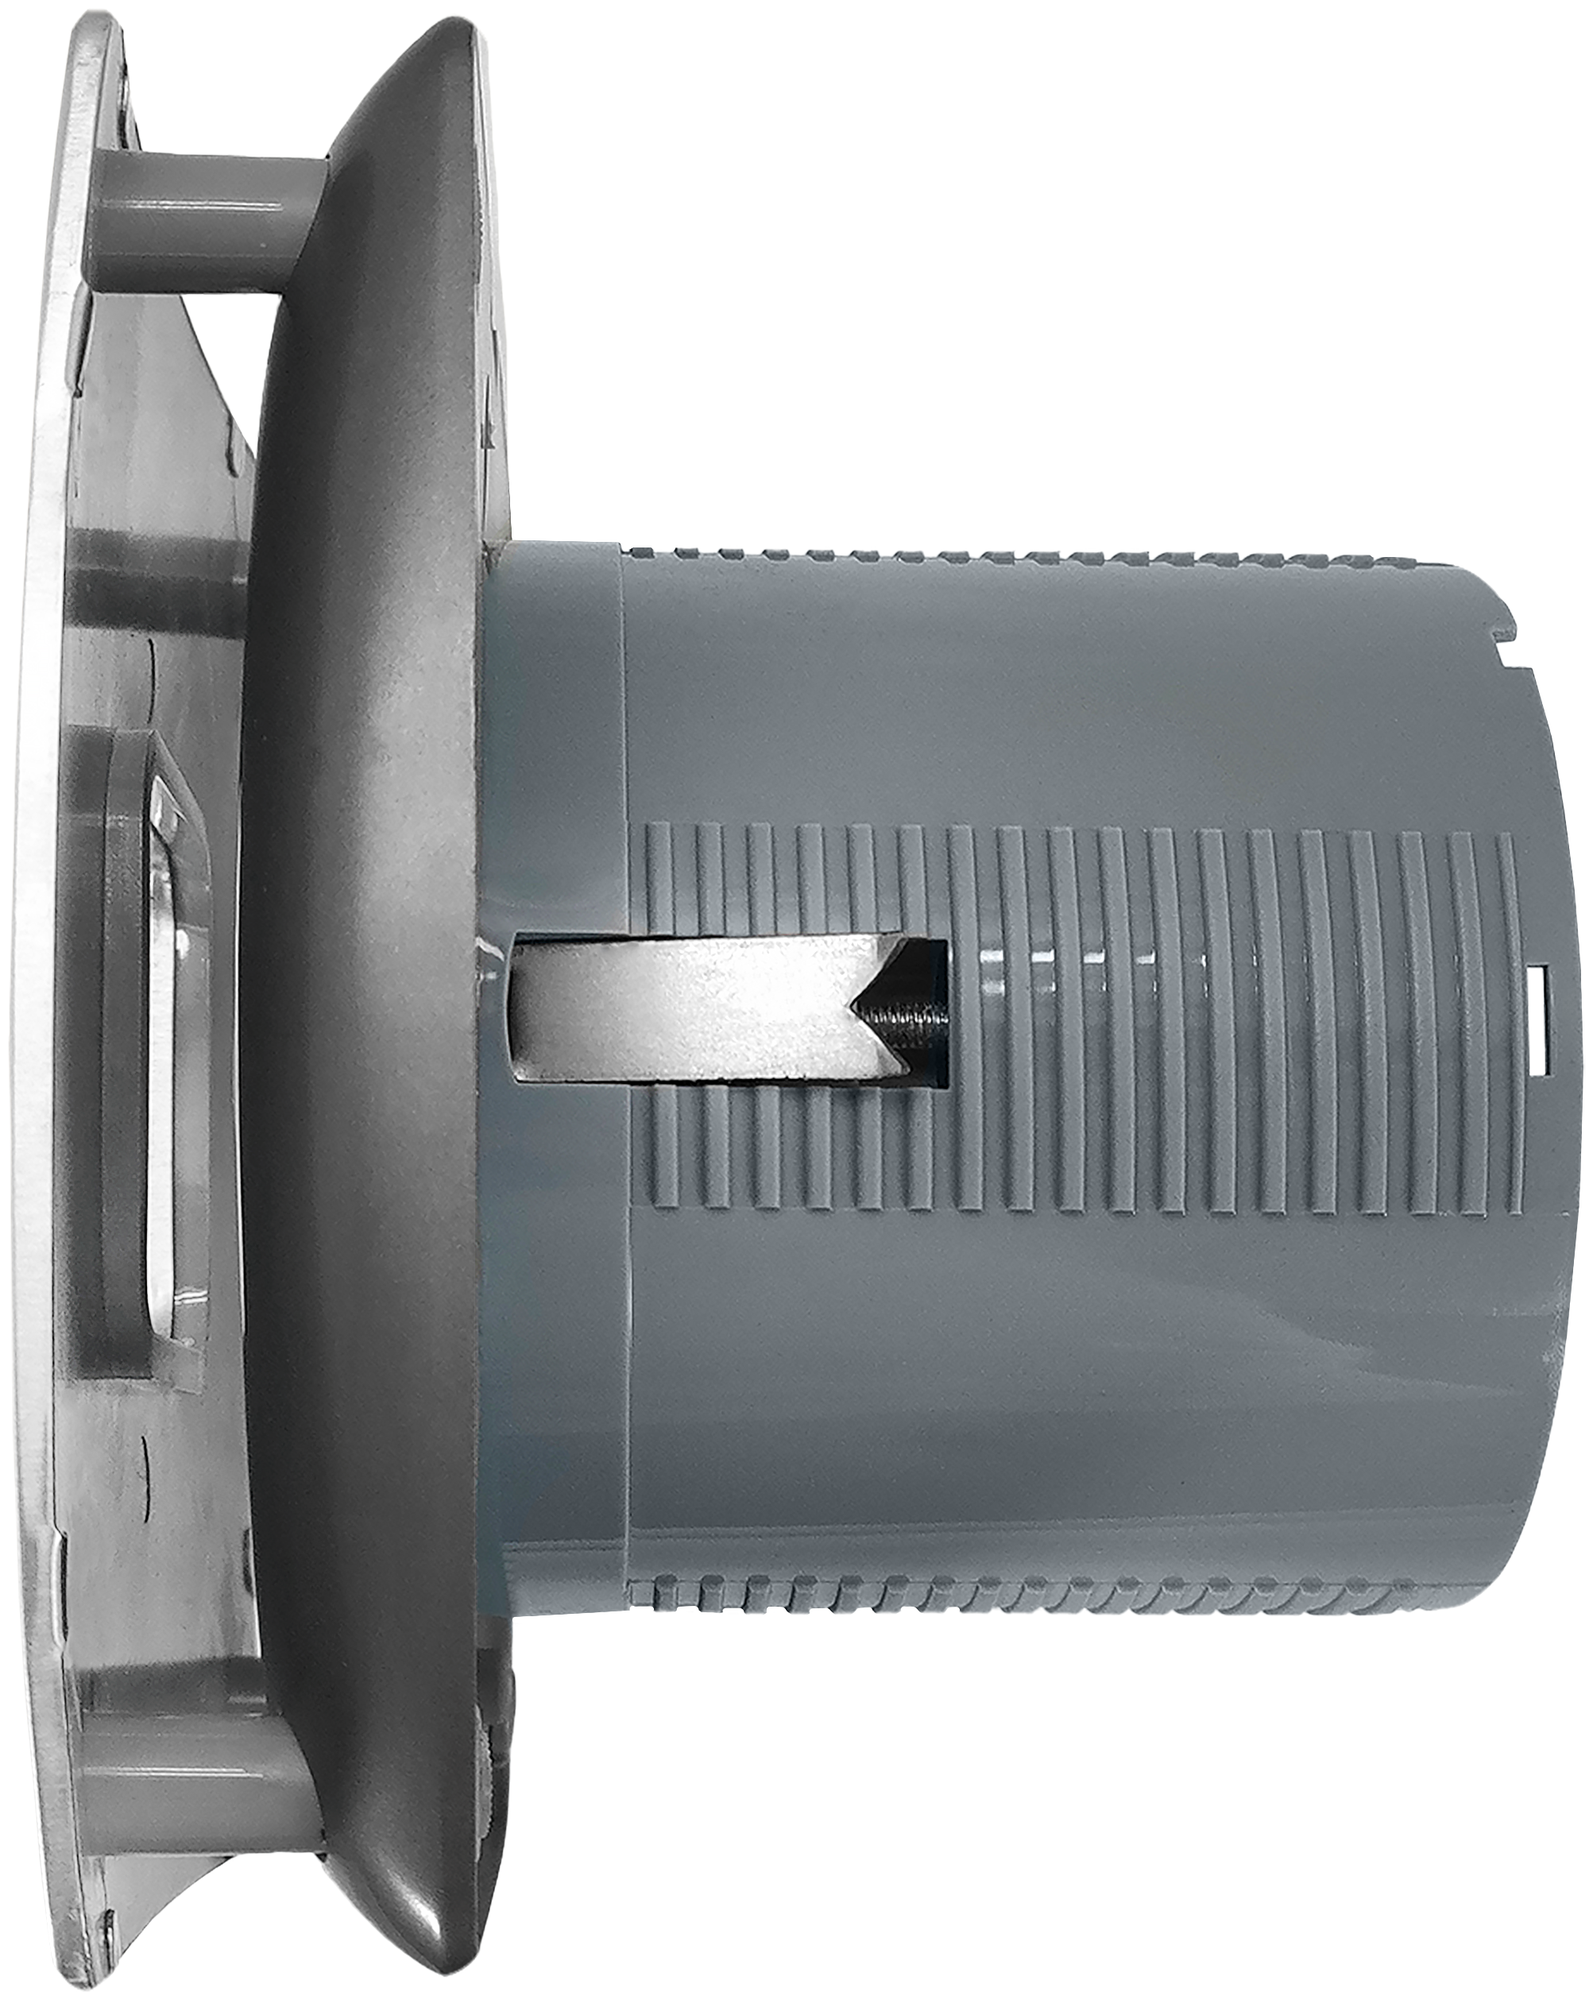 Вентилятор вытяжной Cleanberg 150 SMART I 194х194 мм IPX4, воздухообмен 220 м3/ч, 25ВТ, пластик+нерж.сталь, серый металлик - фотография № 5